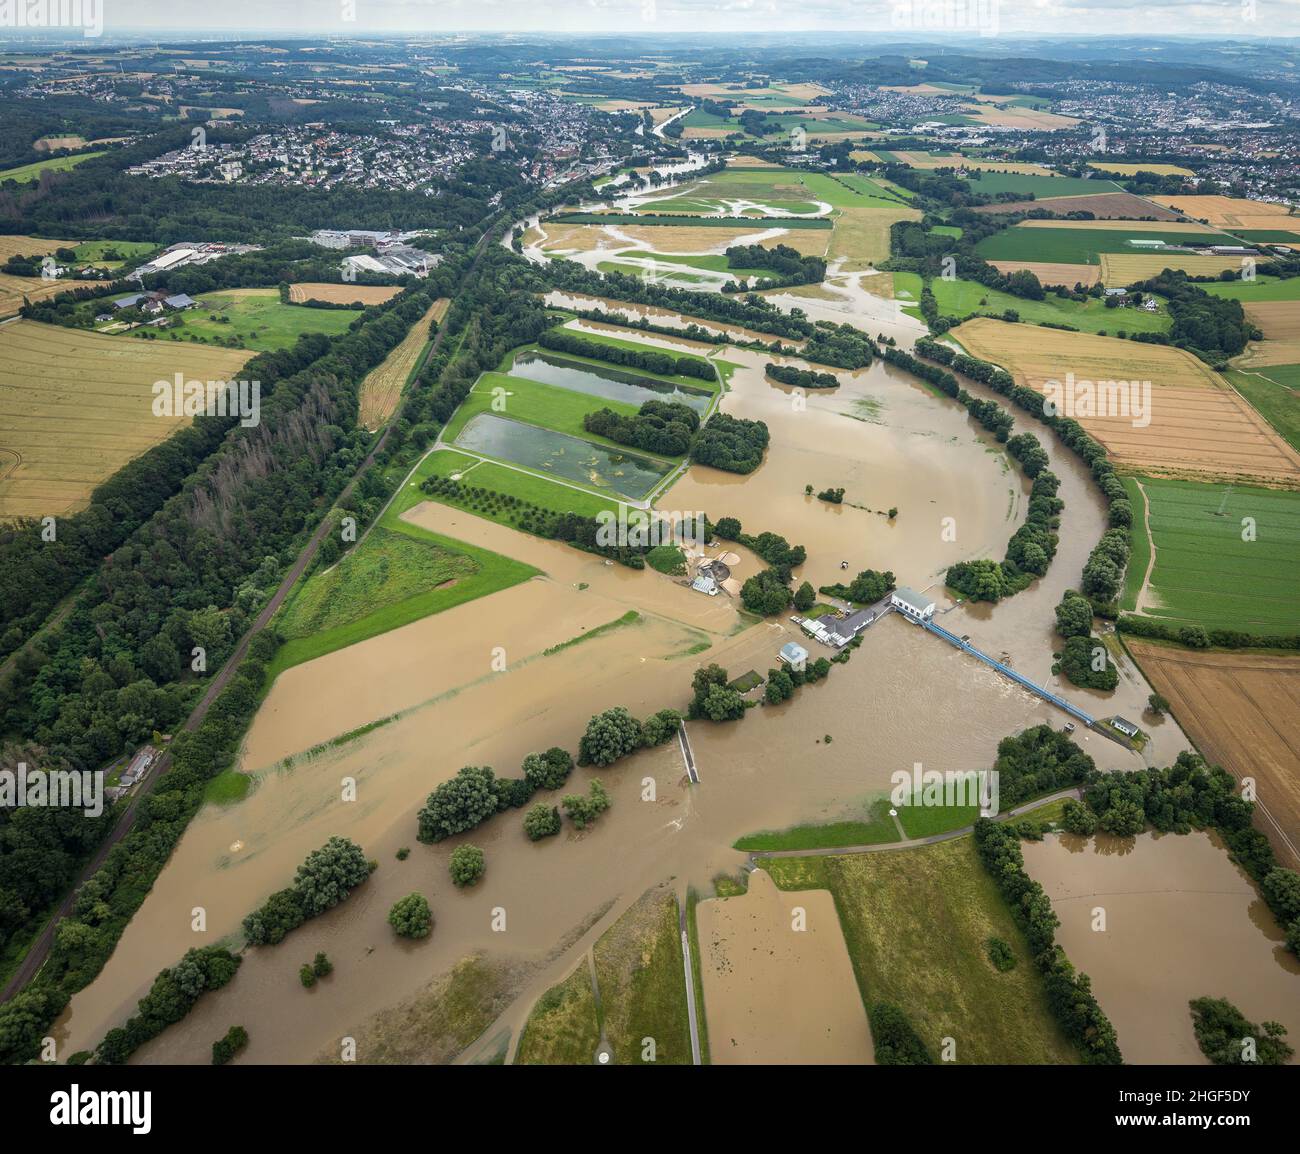 Vista aerea, alluvione della Ruhr, Halingen, Menden, zona della Ruhr, Renania settentrionale-Vestfalia, Germania, DE, Europa, vista degli uccelli, fotografia aerea, fotogr aereo Foto Stock